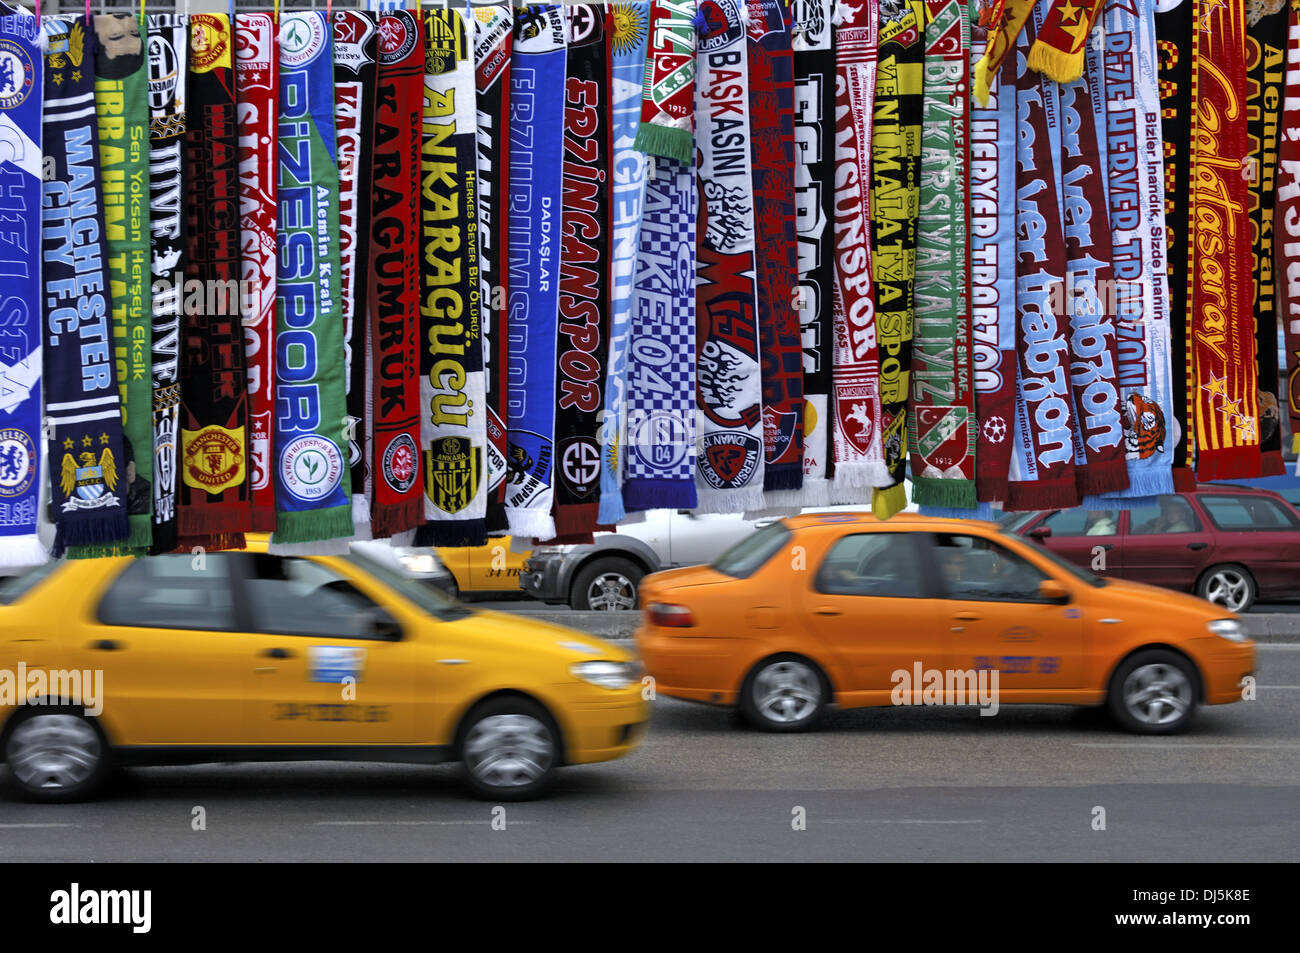 Bufandas de fútbol para la venta, Estambul Foto de stock